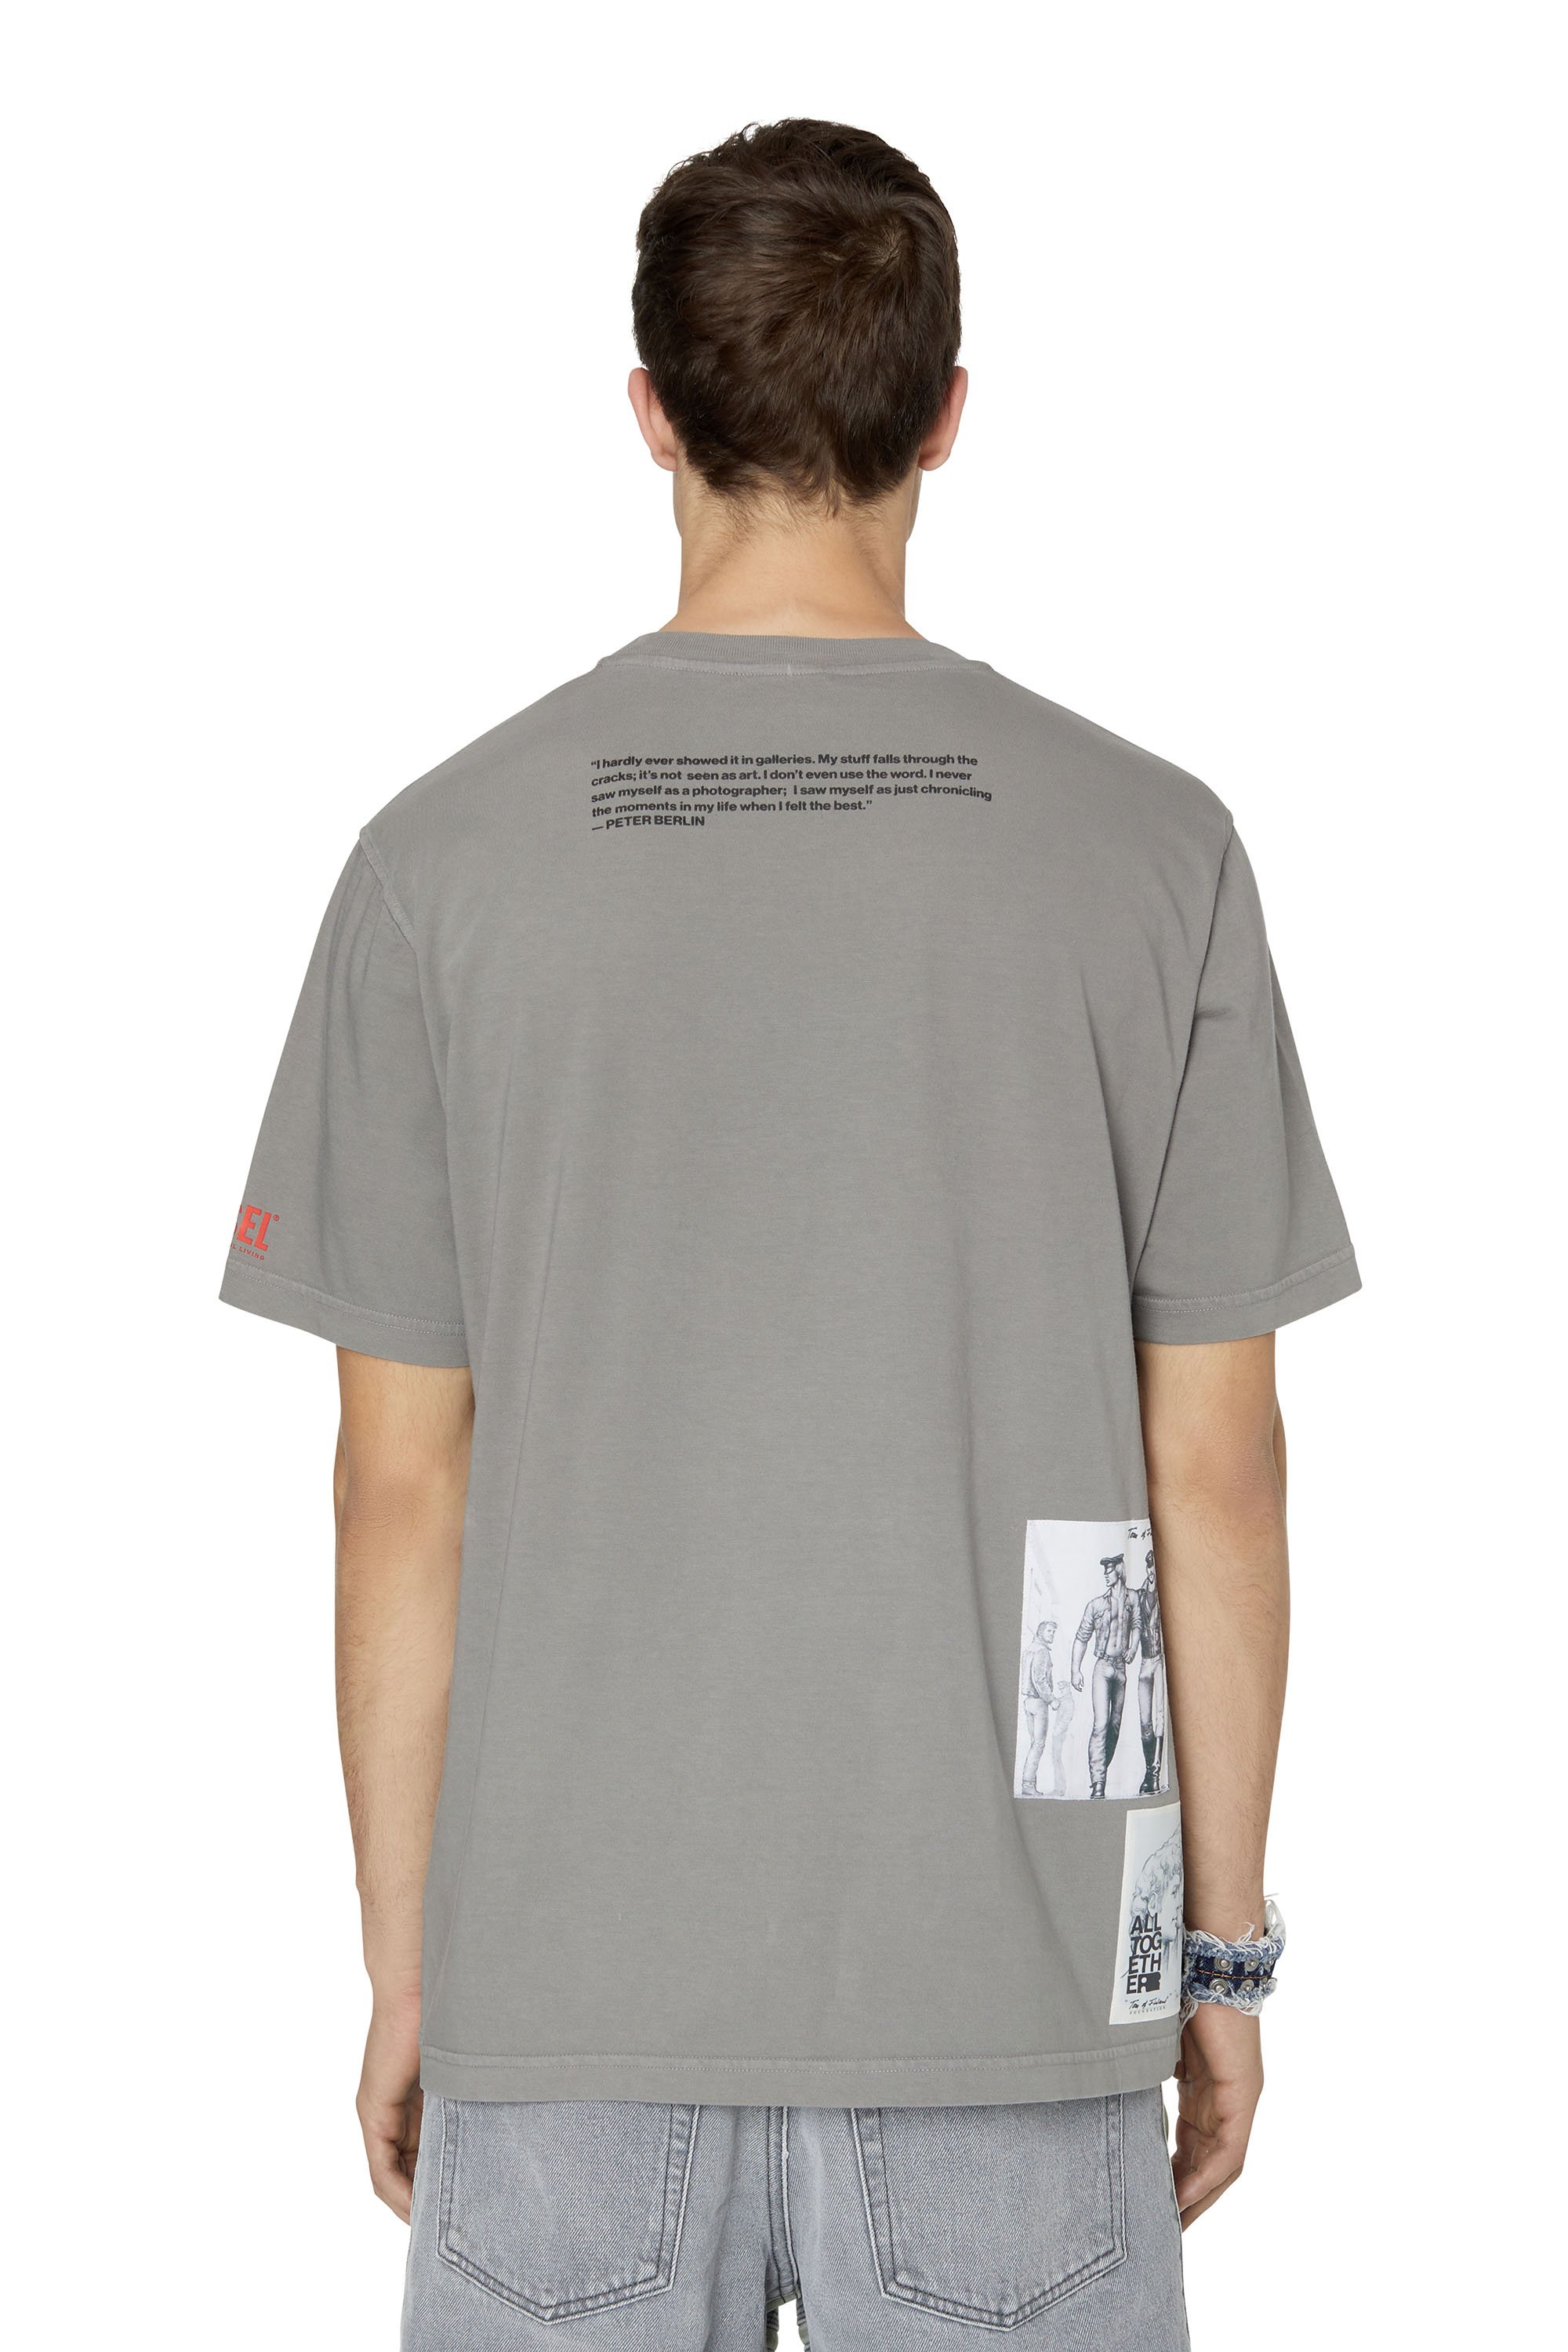 Men's T-shirts: Round Nek, V-Nek | Shop on Diesel.com